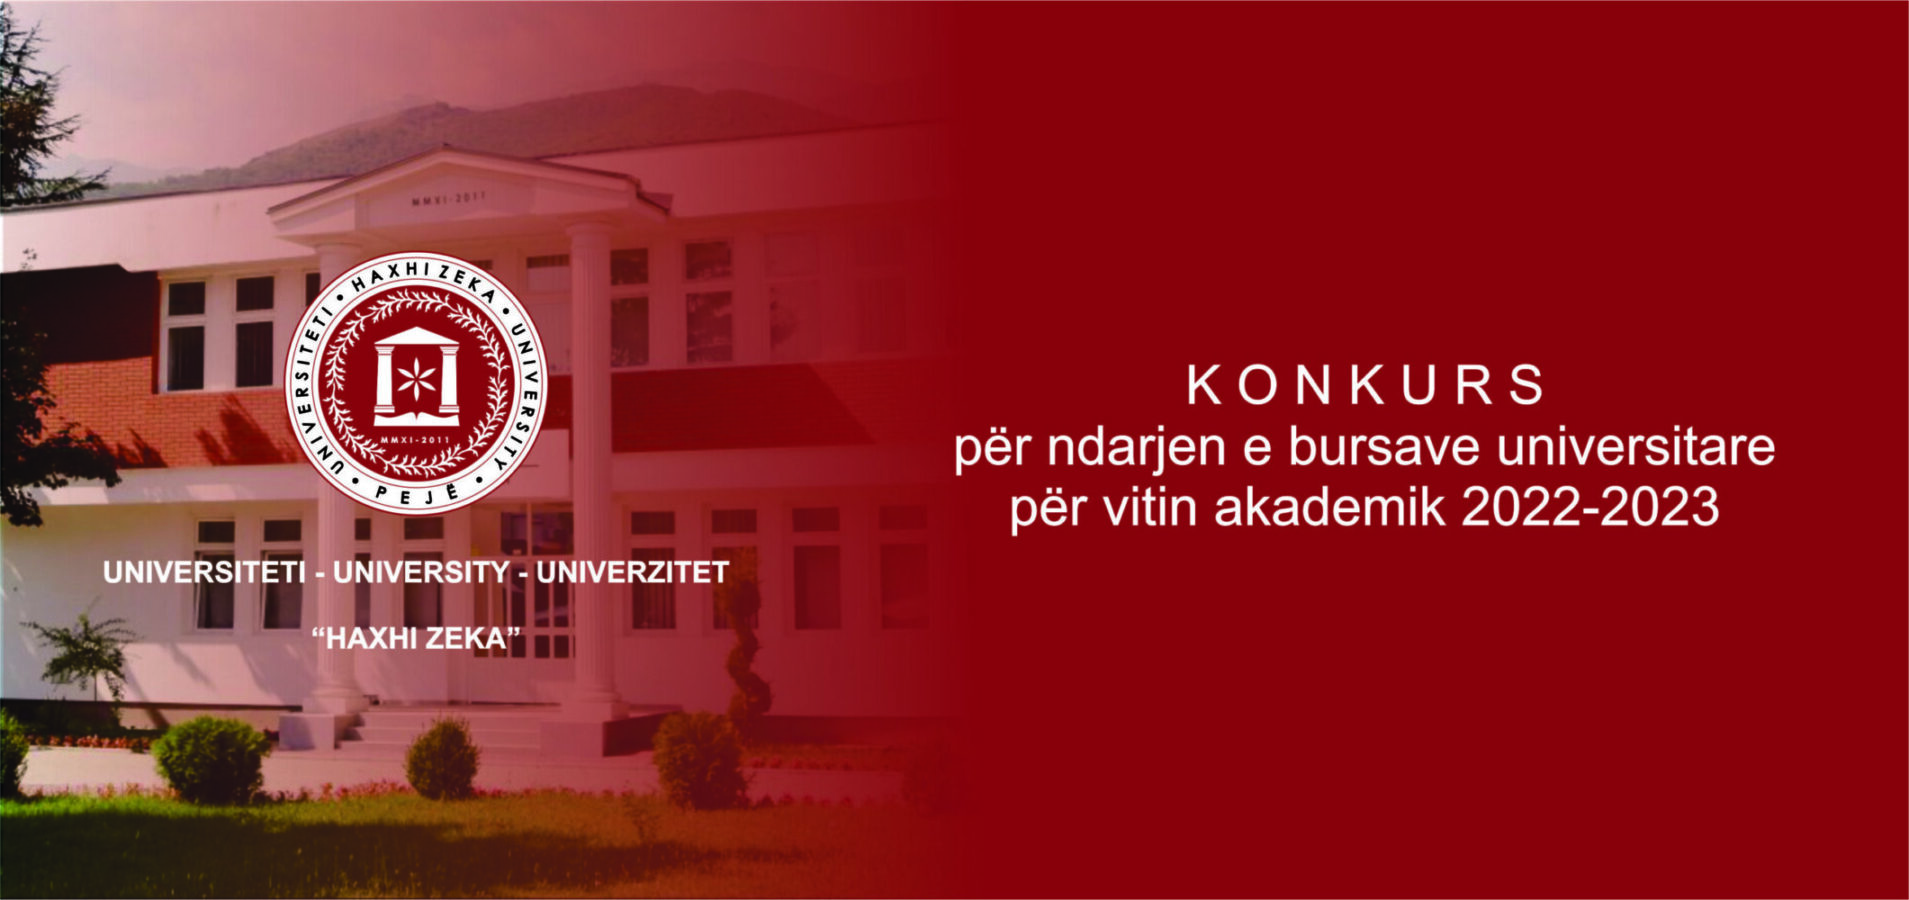 Konkurs për ndarjen e bursave universitare për vitin akademik 2022-2023